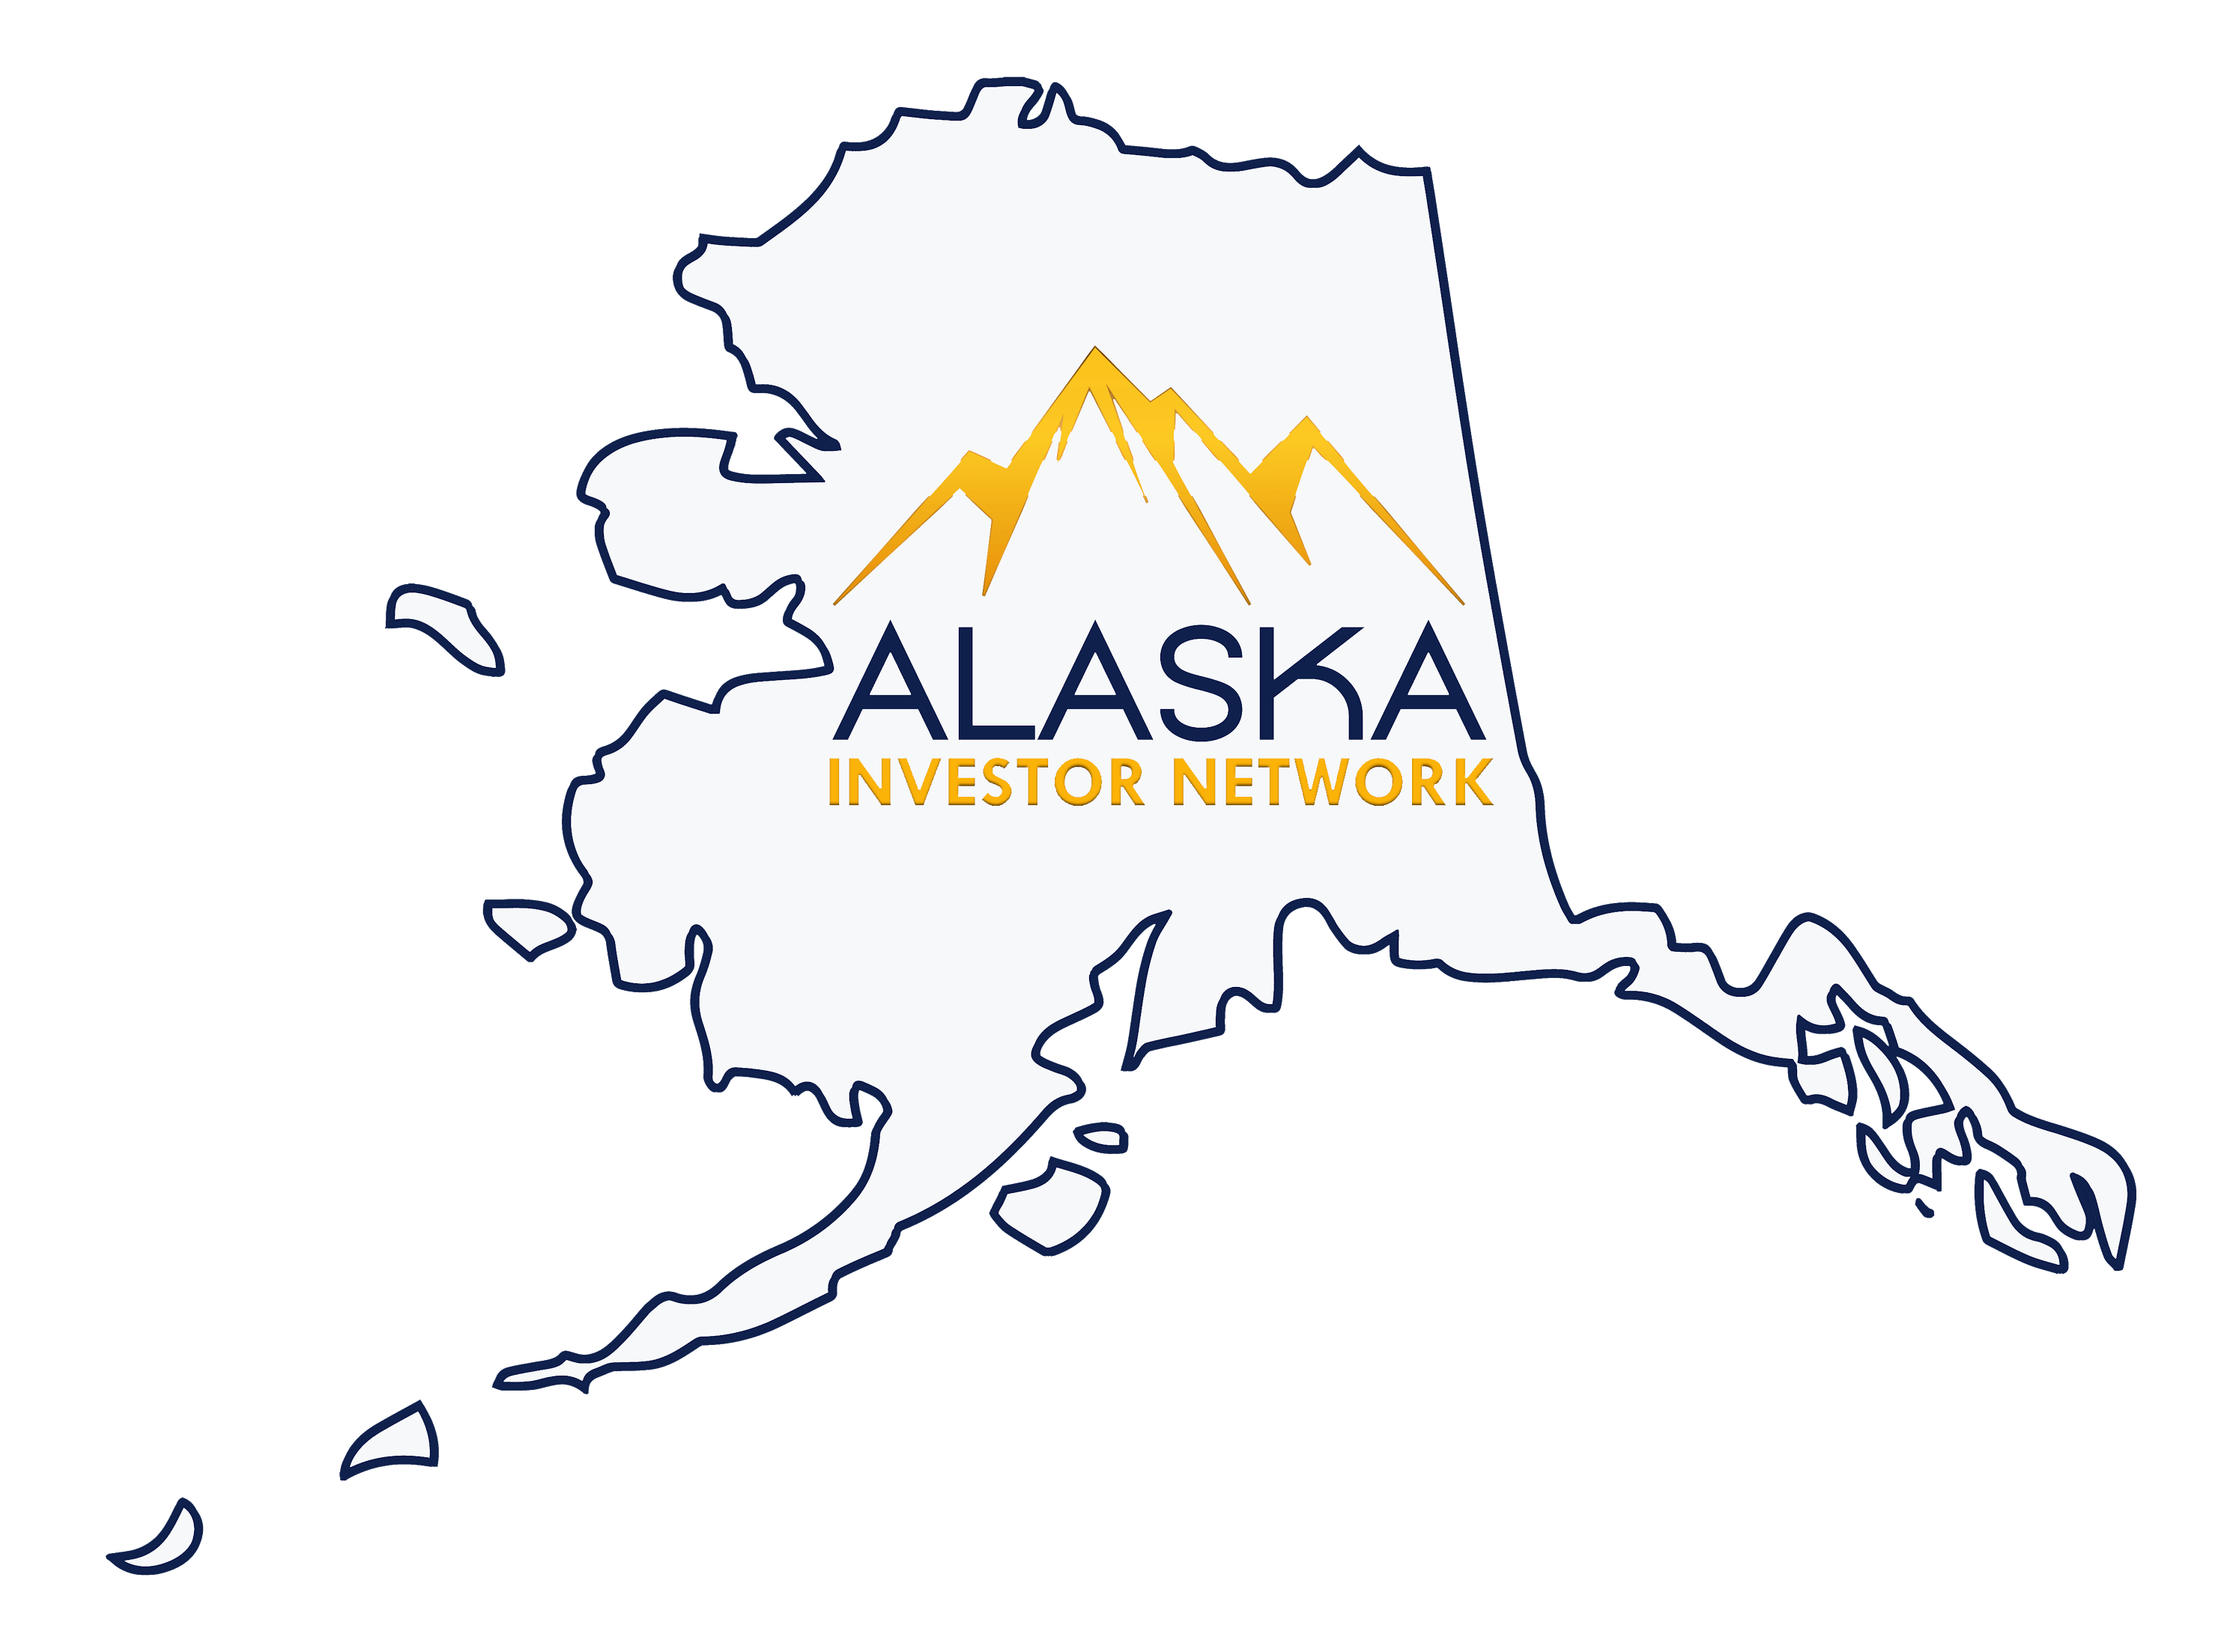 Alaska Investor Network